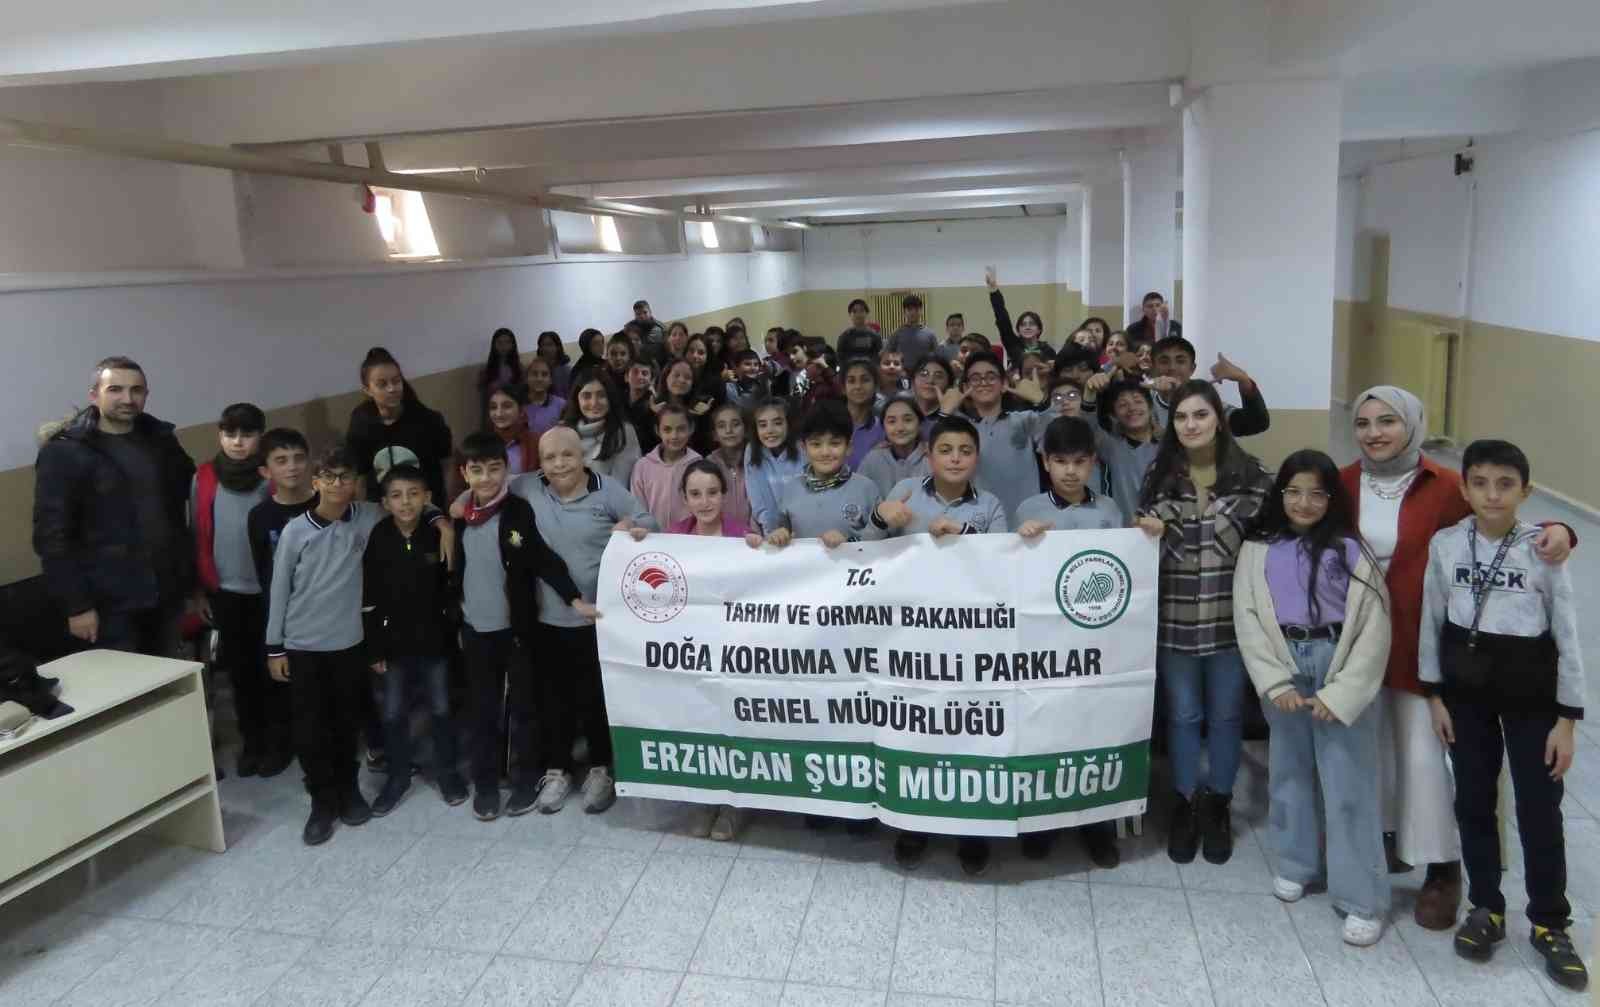 Erzincanda Öğrencilere Biyoçeşitlilik, Biyokaçakçılık Eğitimi Verildi